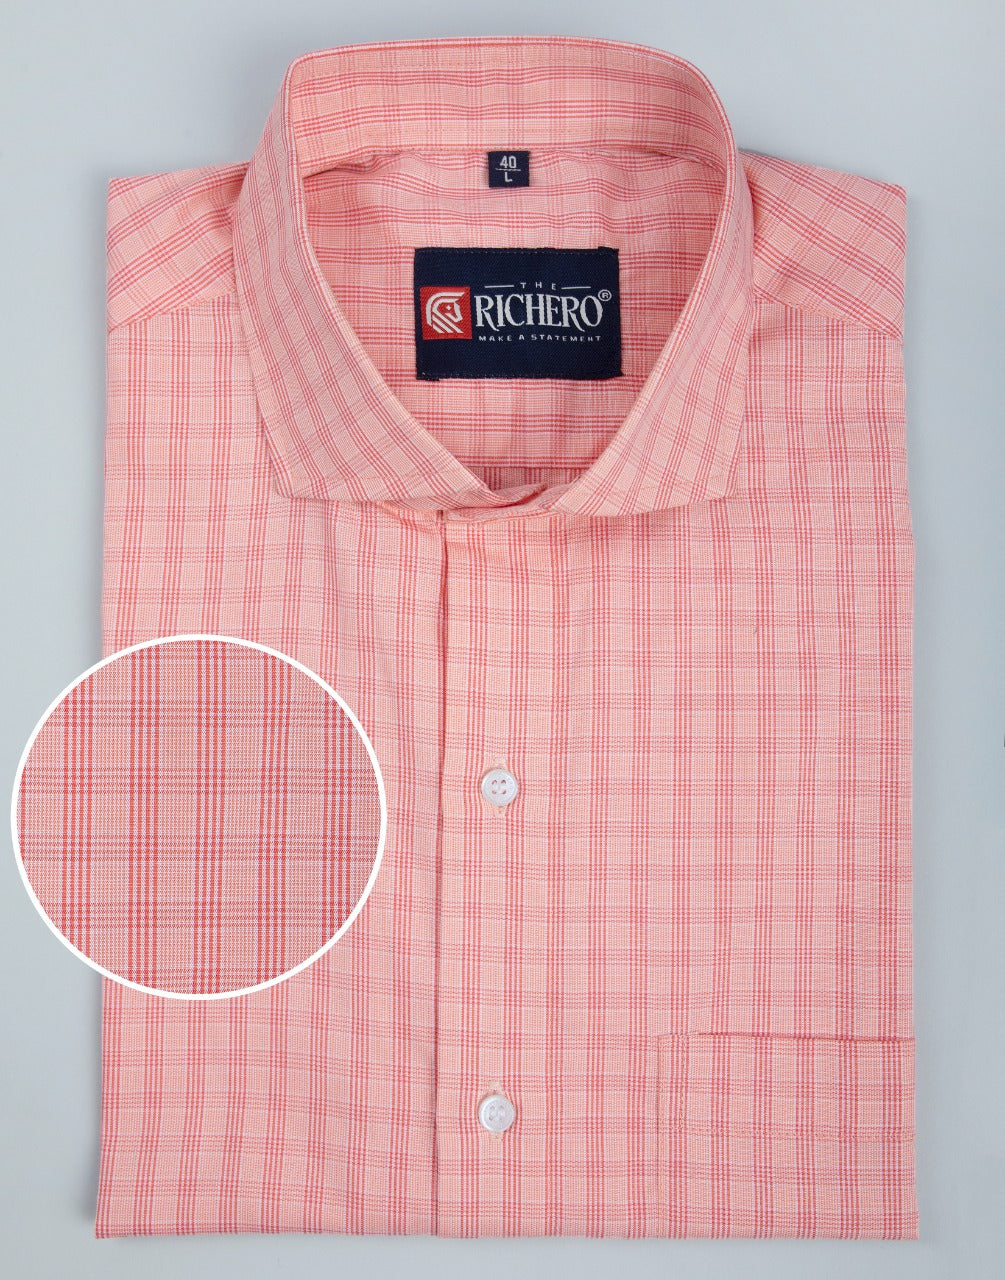 Blush & garnet pink formal shirt